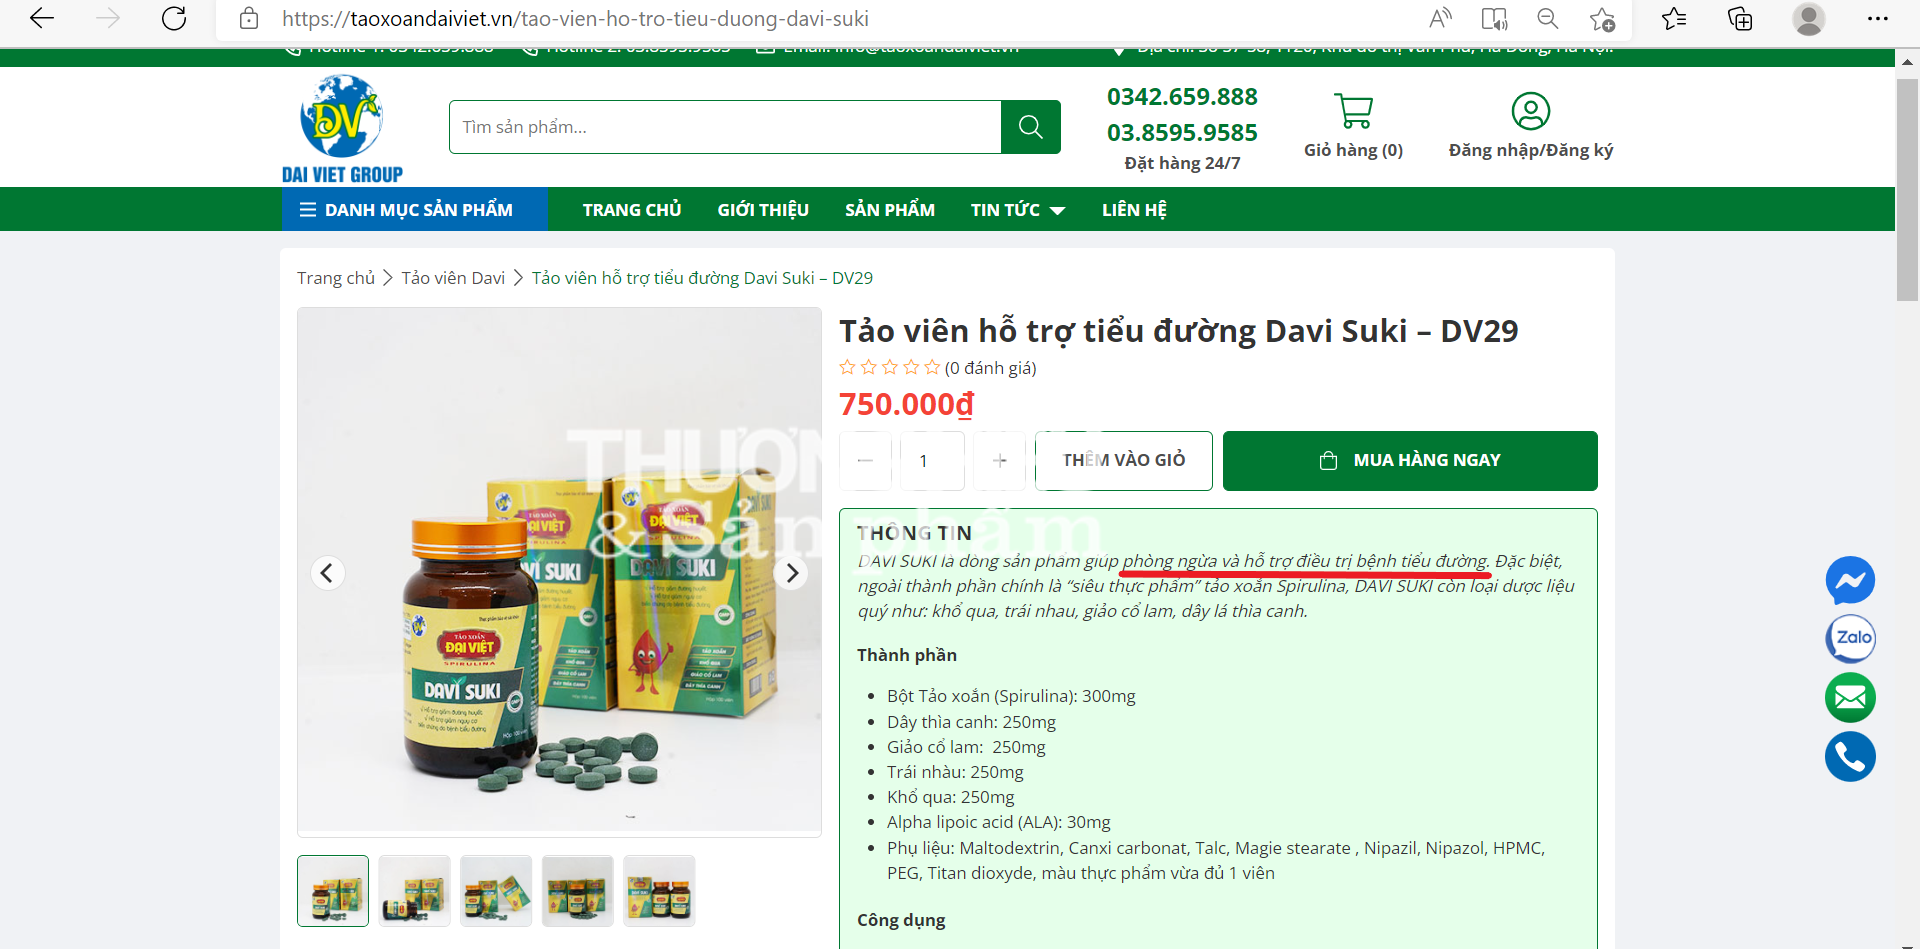 Người tiêu dùng cẩn trọng khi mua và sử dụng sản phẩm Davi Suki